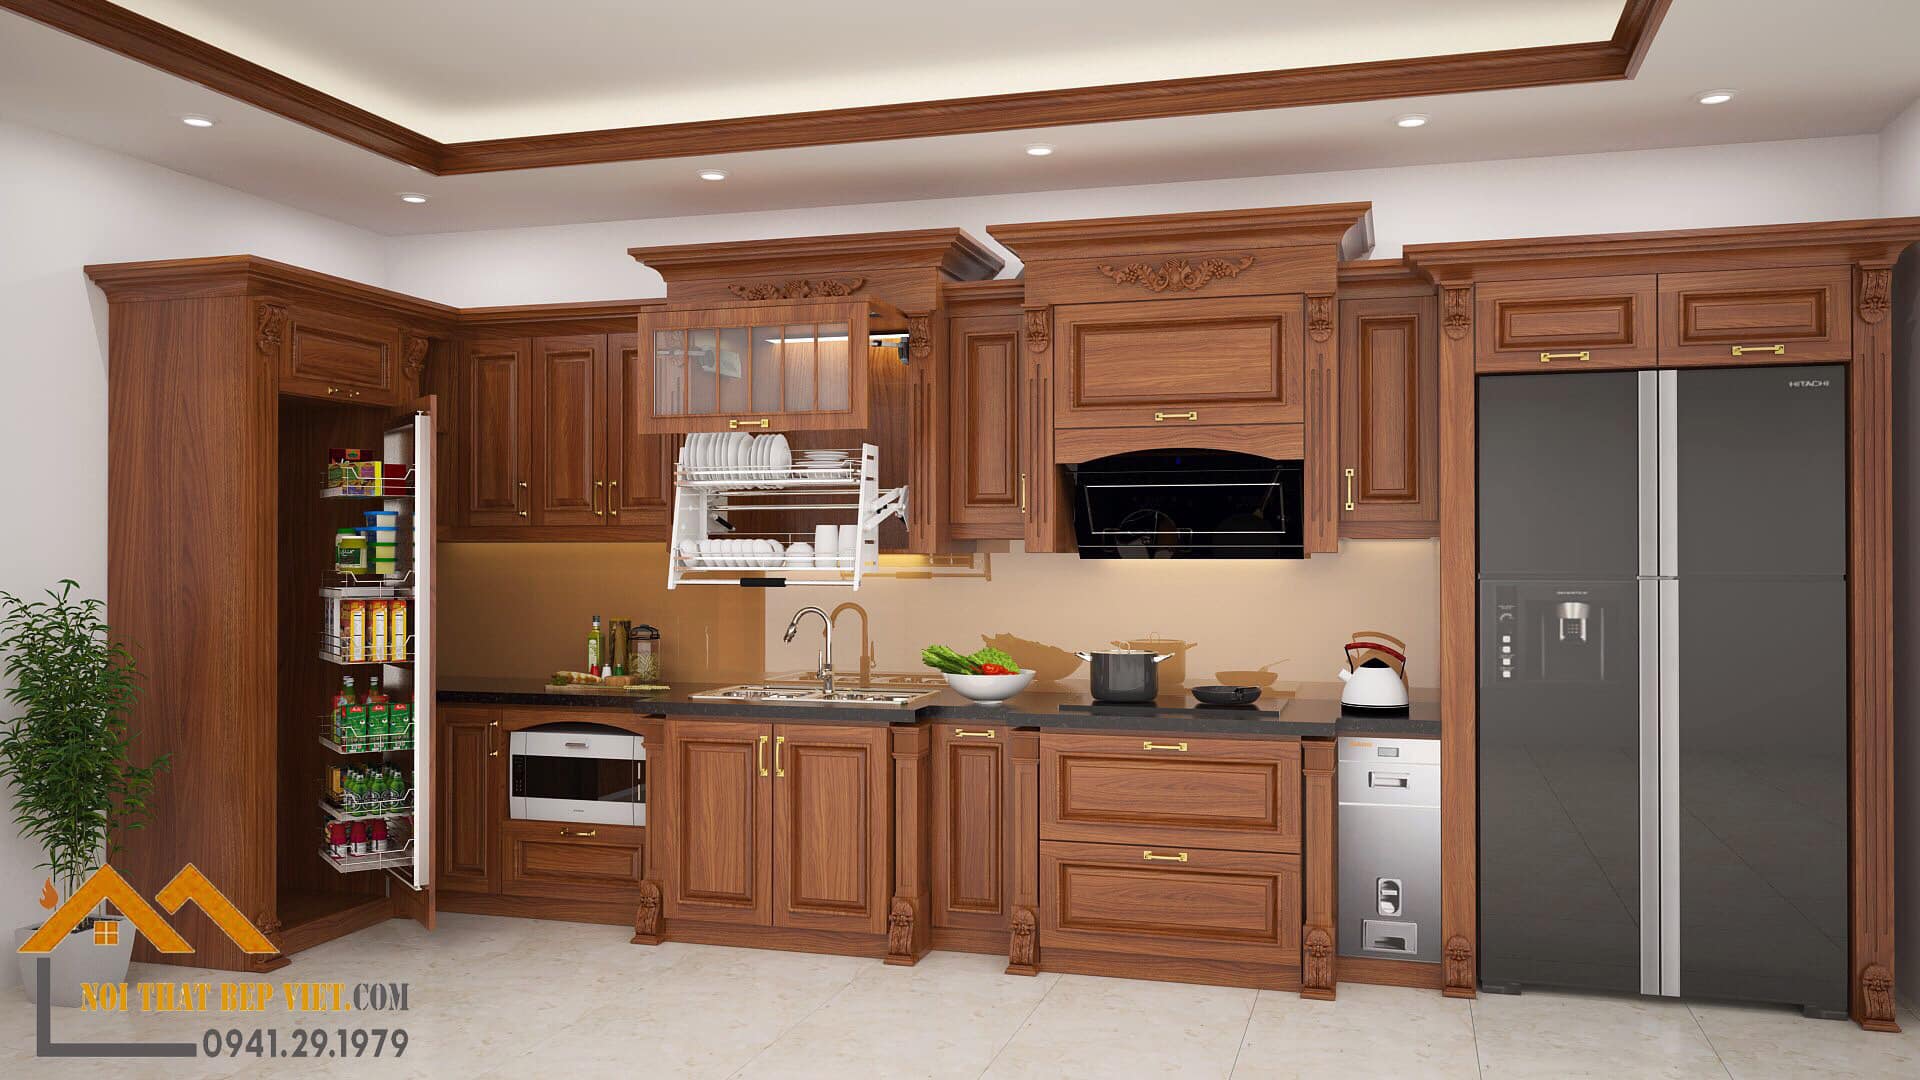 Tủ bếp gỗ gõ uy tín Bắc Ninh 2024 mang đến cho bạn một không gian bếp đẹp và ấm cúng. Sản phẩm được chế tác từ gỗ gõ có nguồn gốc từ Bắc Ninh với chất lượng tốt nhất. Với kích thước tiêu chuẩn và thiết kế hiện đại, tủ bếp này sẽ đáp ứng tốt nhu cầu của bạn về không gian lưu trữ và sử dụng.